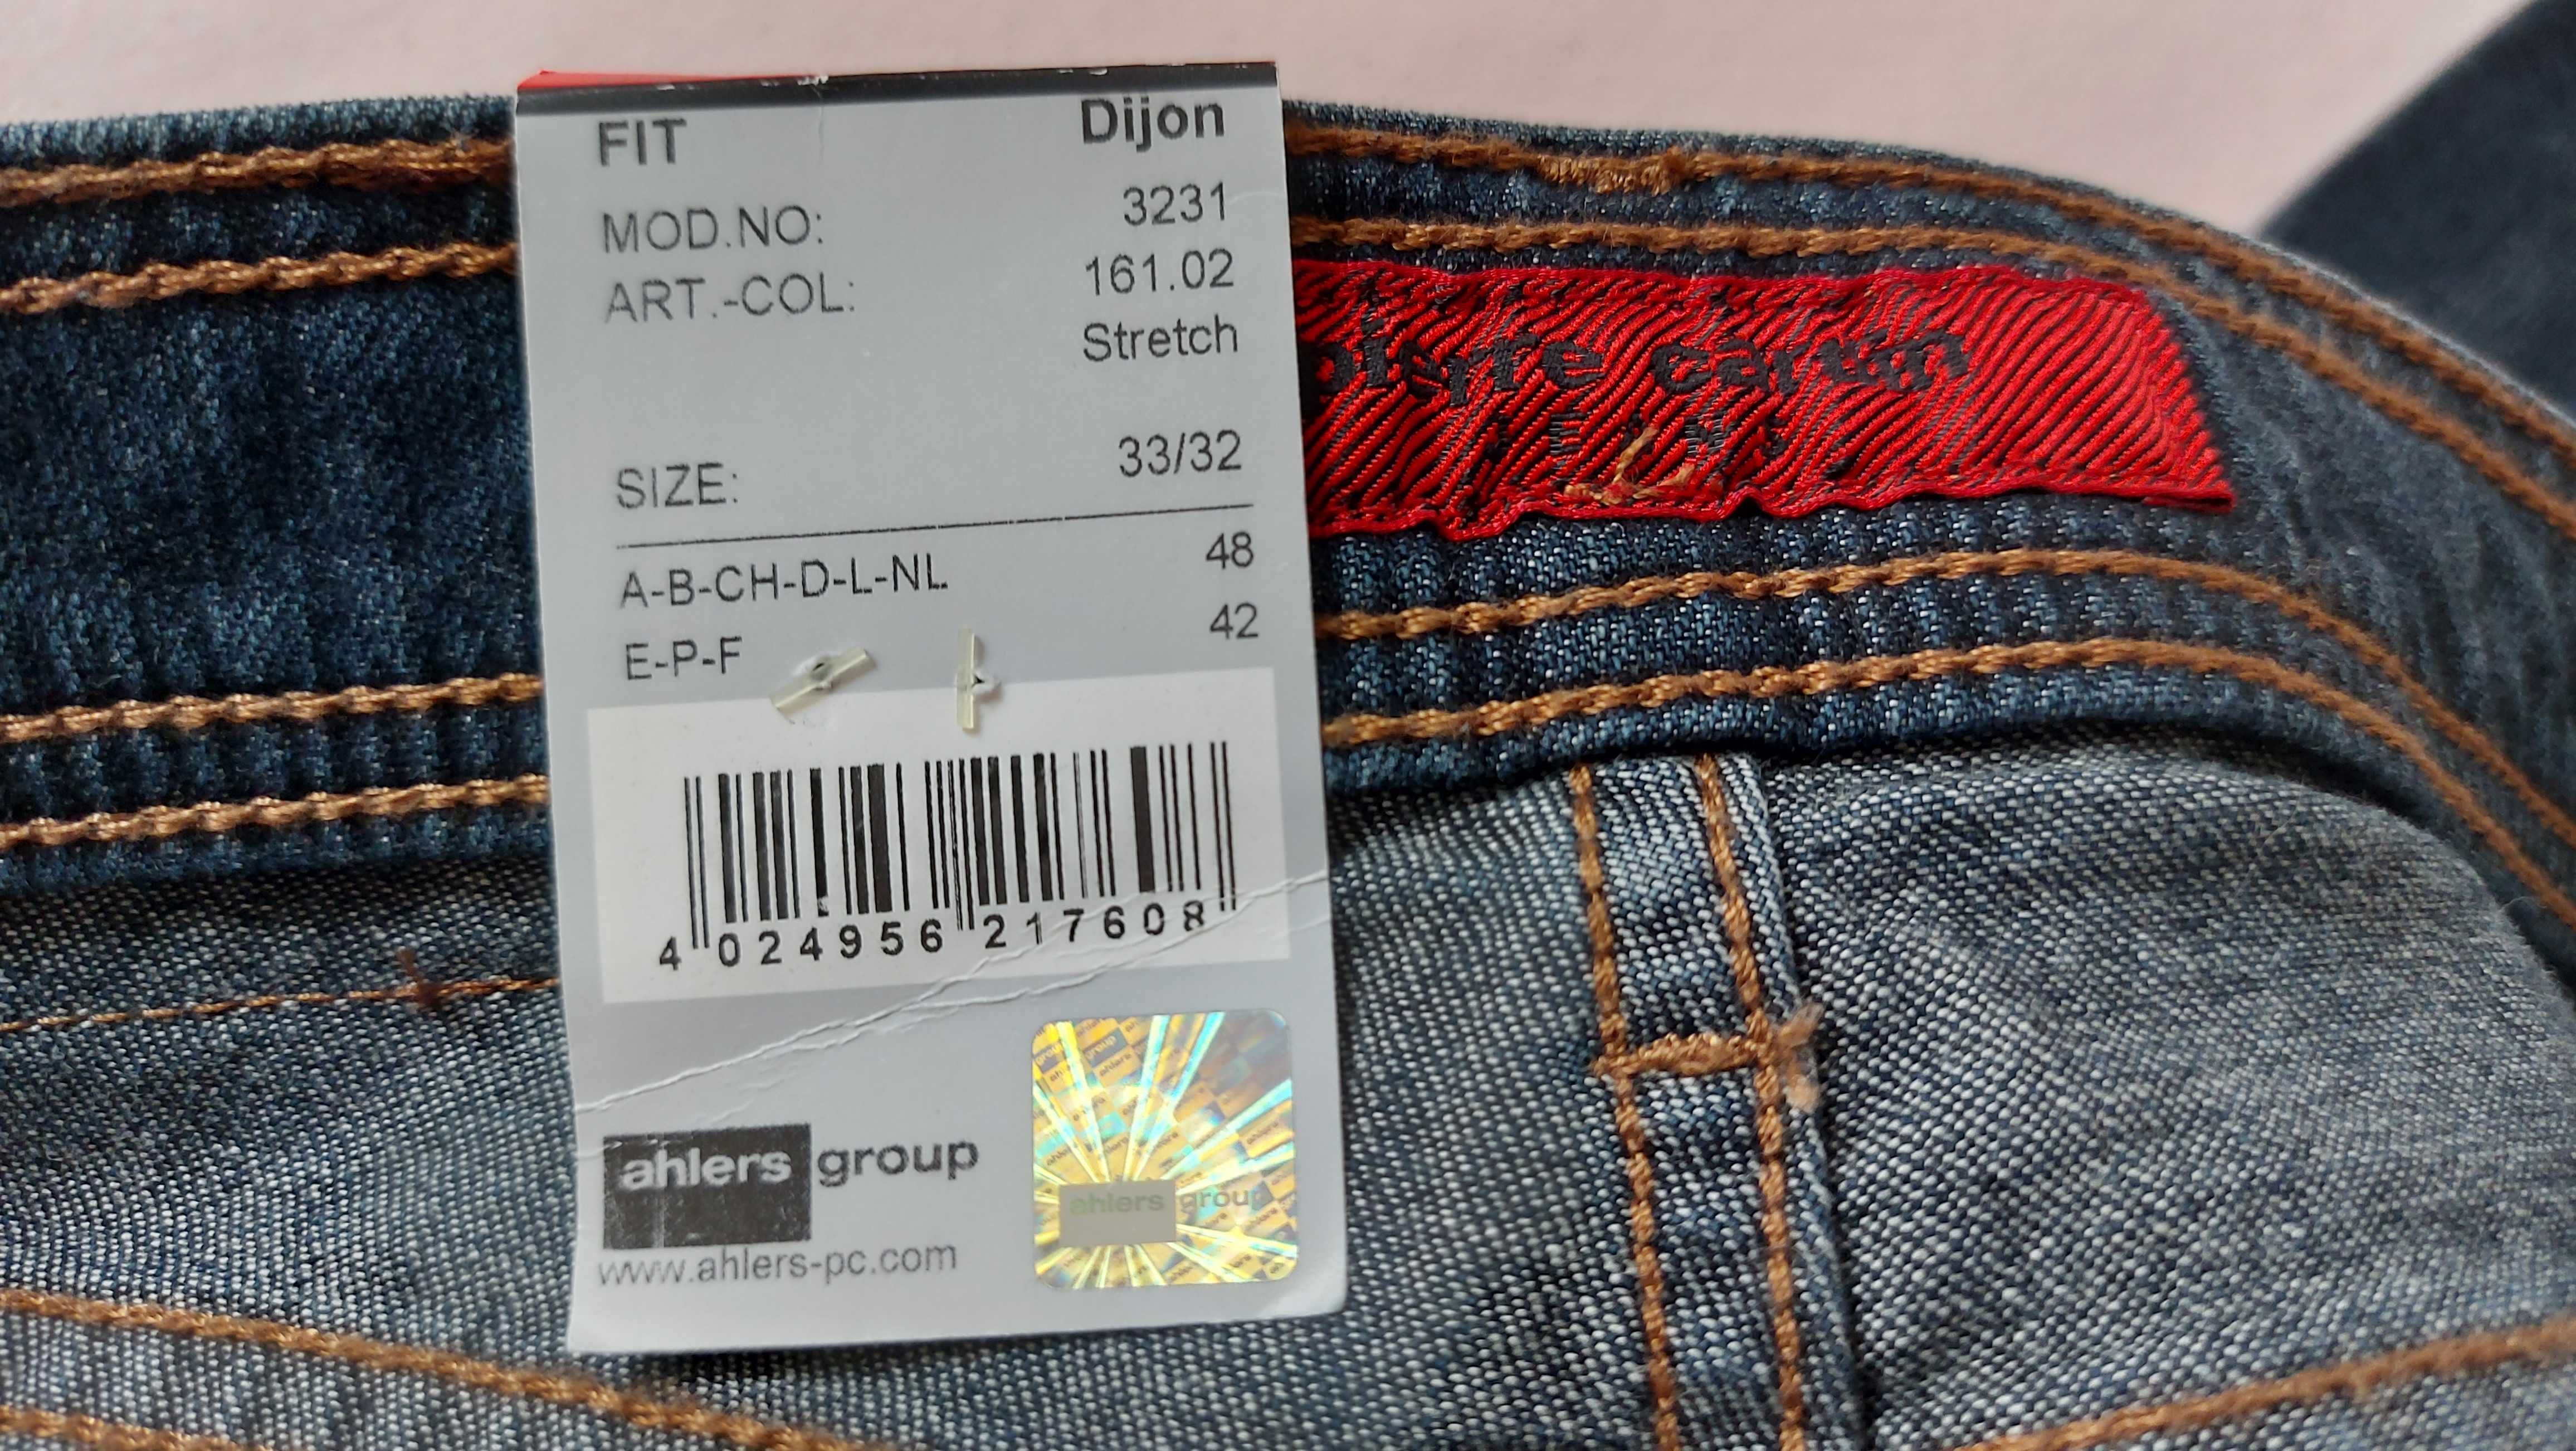 Pierre Cardin spodnie jensowe jeansy roz. 33/32